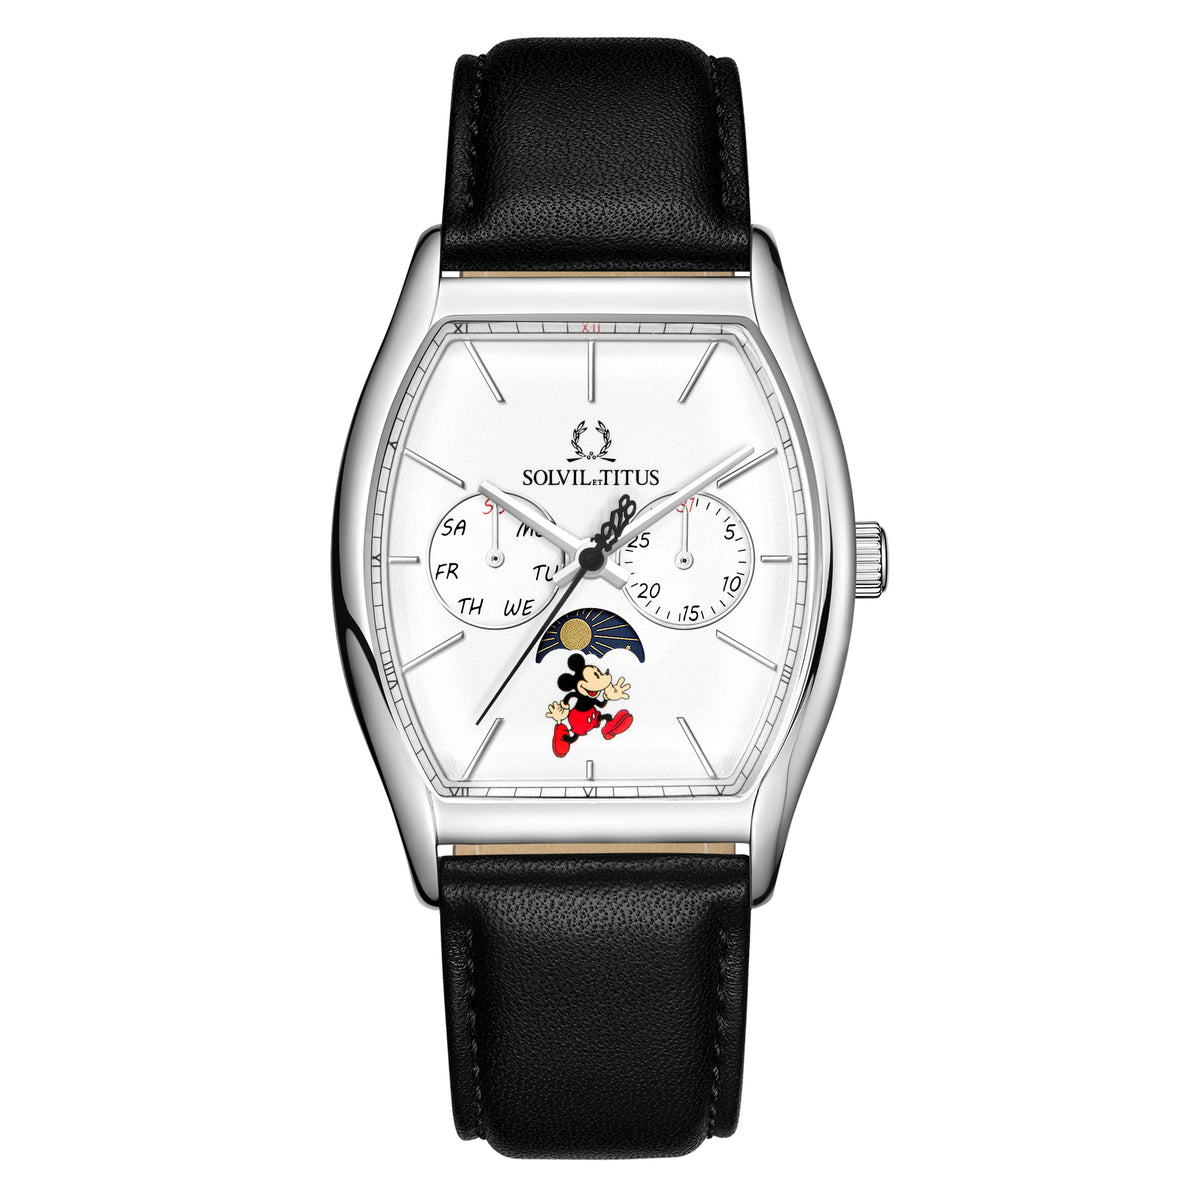 คอลเลกชัน Barista “Mickey Mouse 95th Anniversary” นาฬิกาผู้ชาย ลิมิเตดอิดิชัน เรือนสีเงิน มัลติฟังก์ชัน บอกกลางวัน-กลางคืน ระบบควอตซ์ สายหนัง ขนาดตัวเรือน 37 มม. (W06-03355-001)